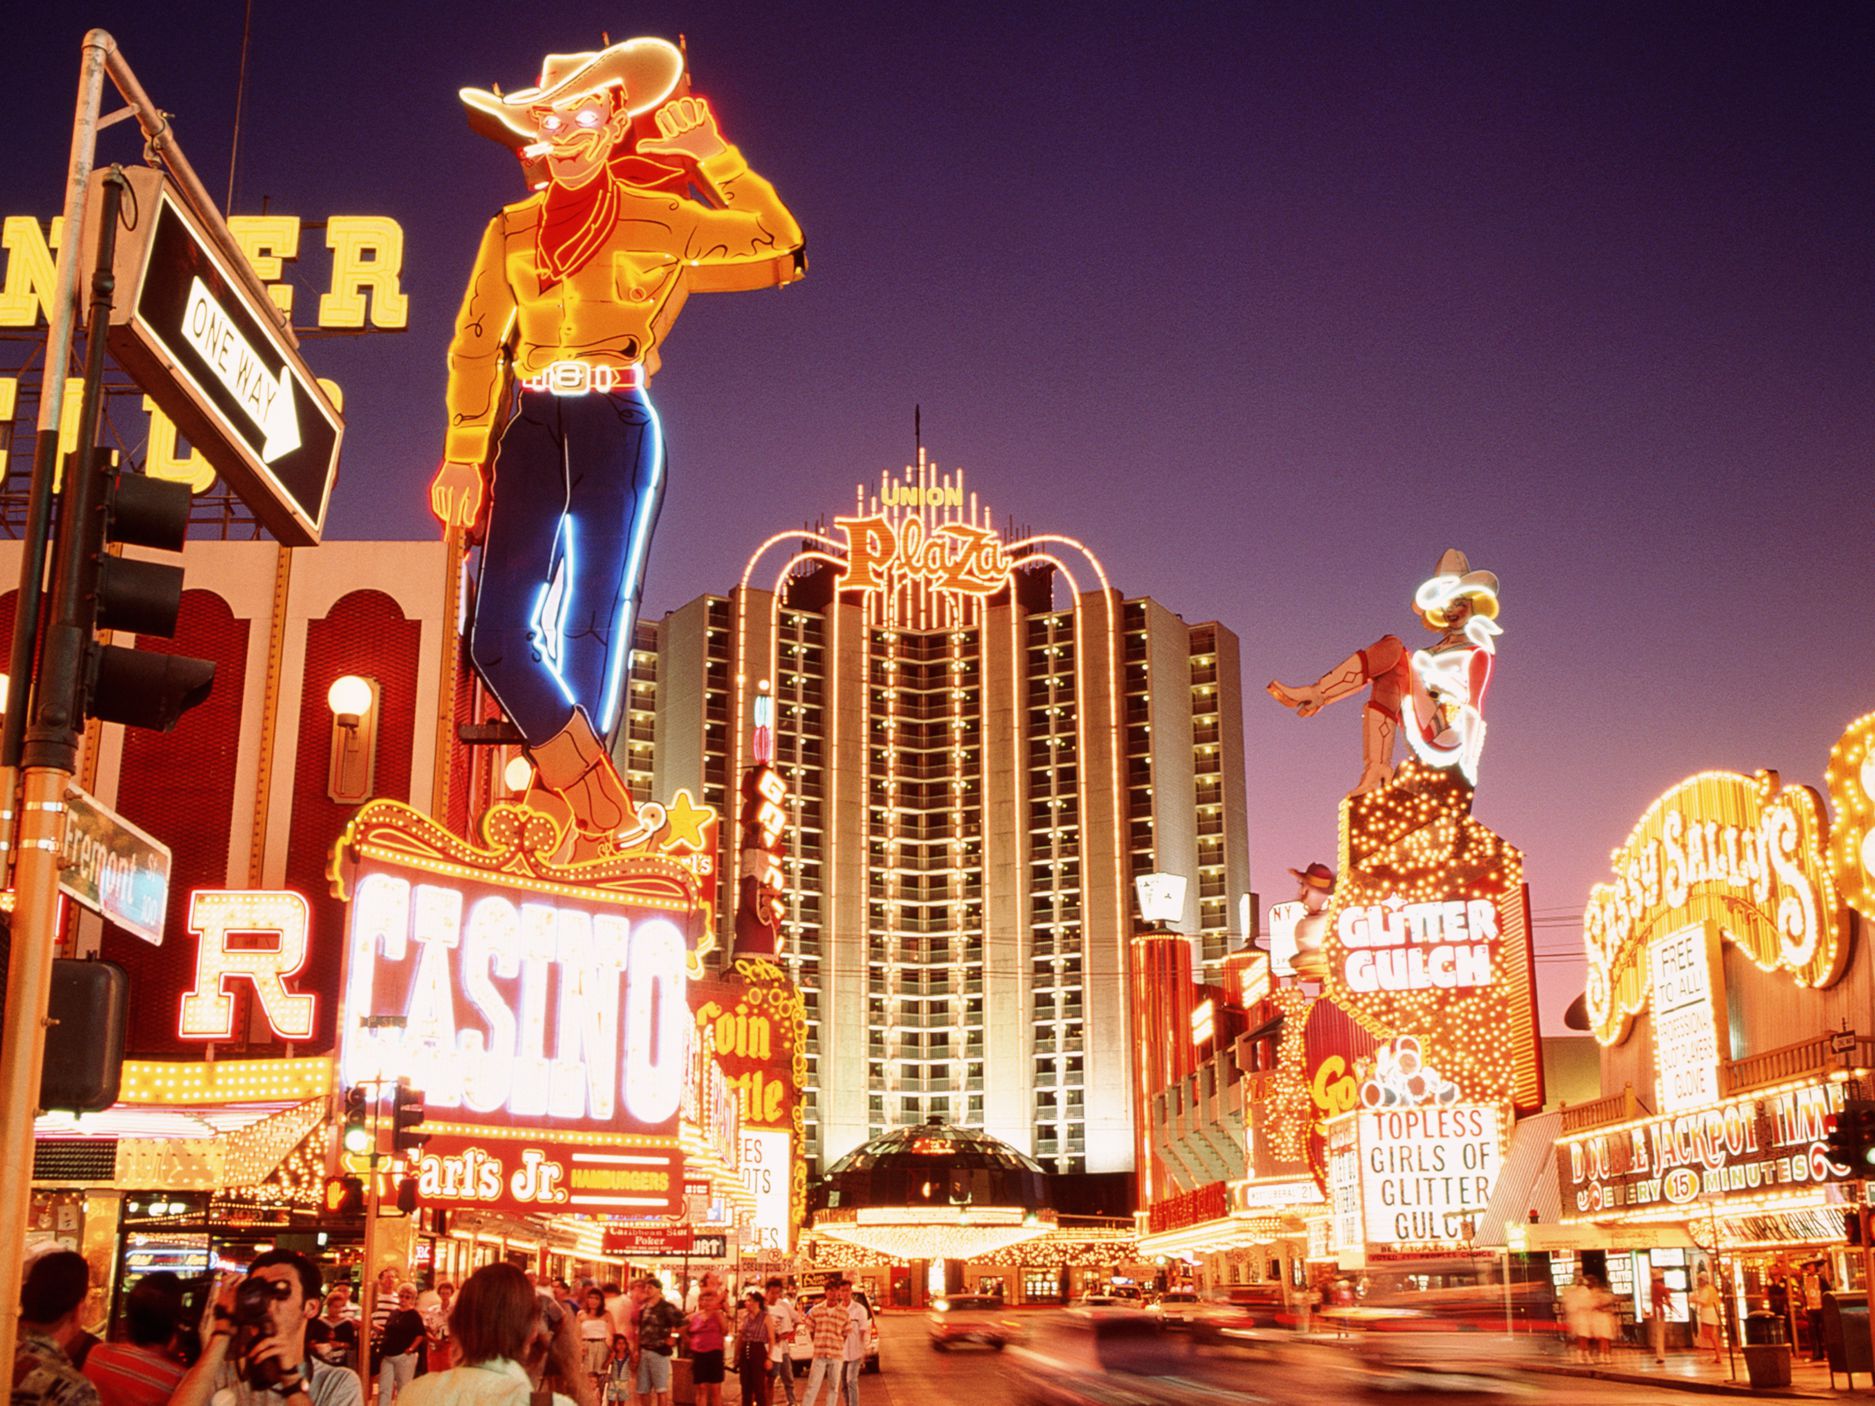 Glücksspiel in Las Vegas